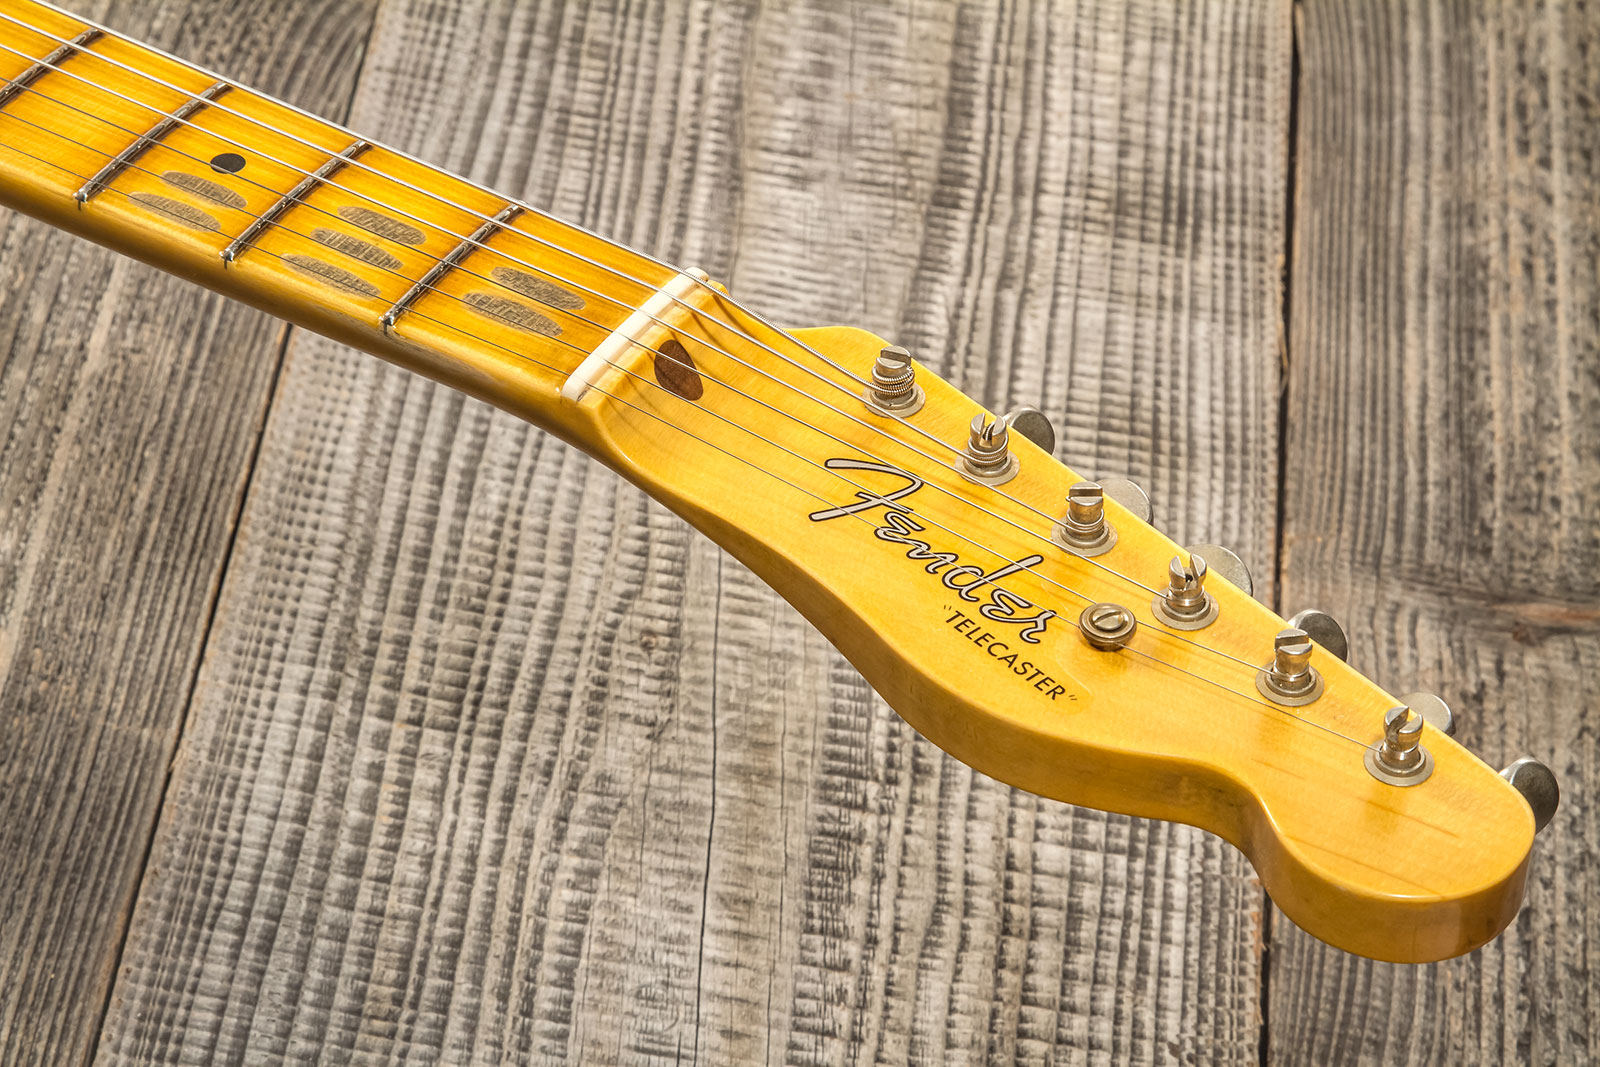 Fender Custom Shop Tele Thinline 50s Mn #cz574212 - Journeyman Relic Aged 2-color Sunburst - Guitarra eléctrica con forma de tel - Variation 8